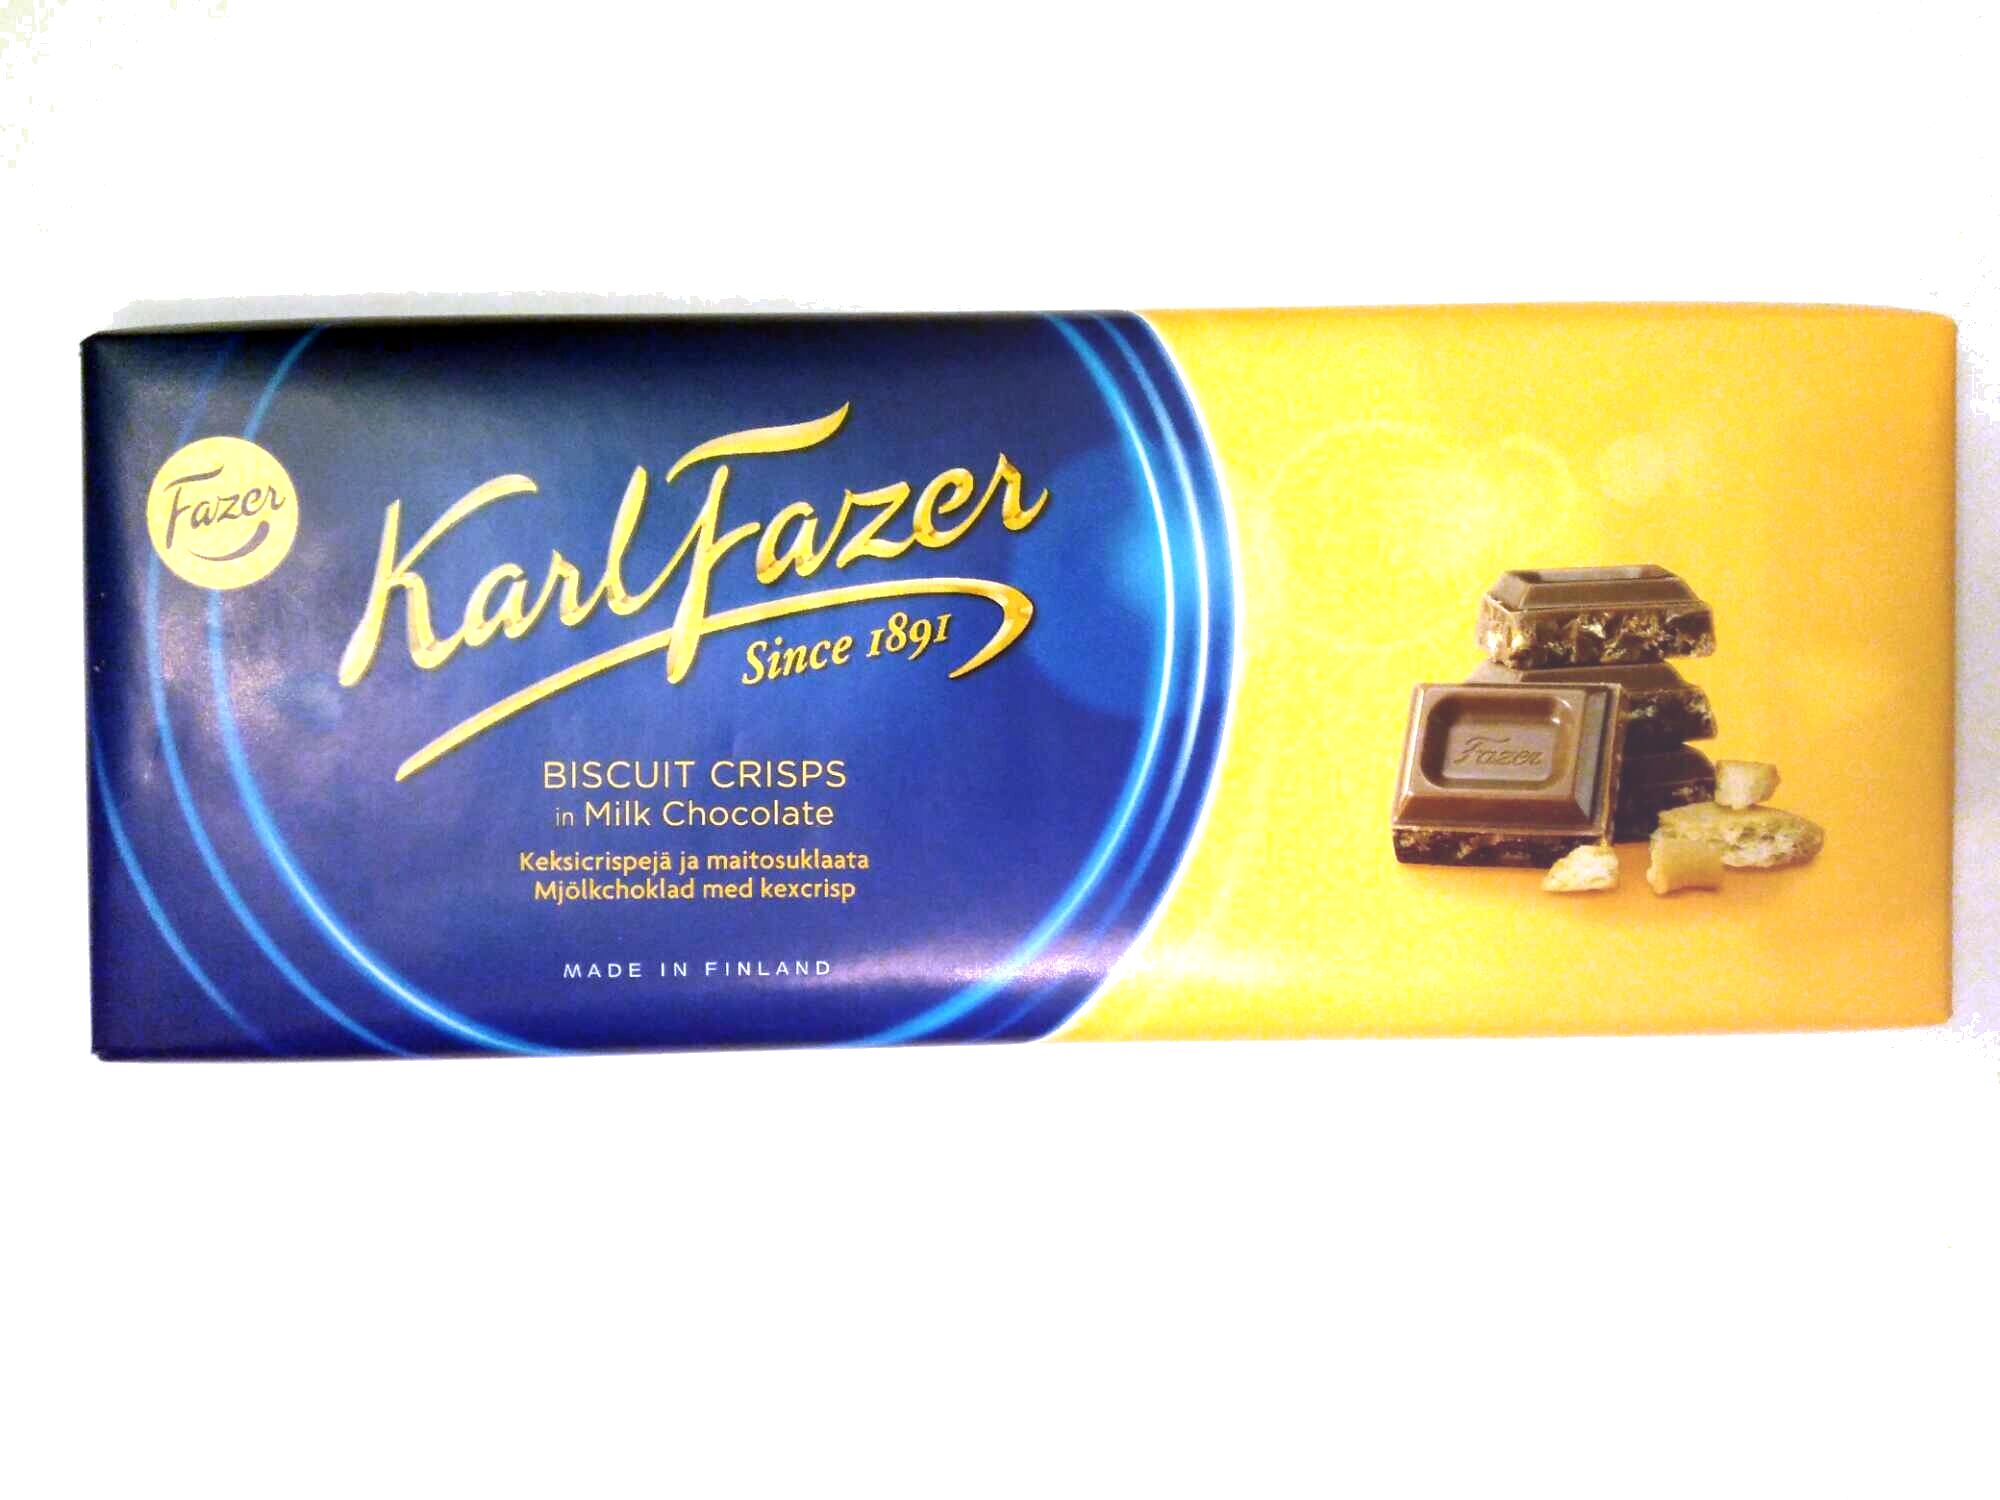 Karl Fazer keksicrispejä ja maitosuklaata - Tuote - fi